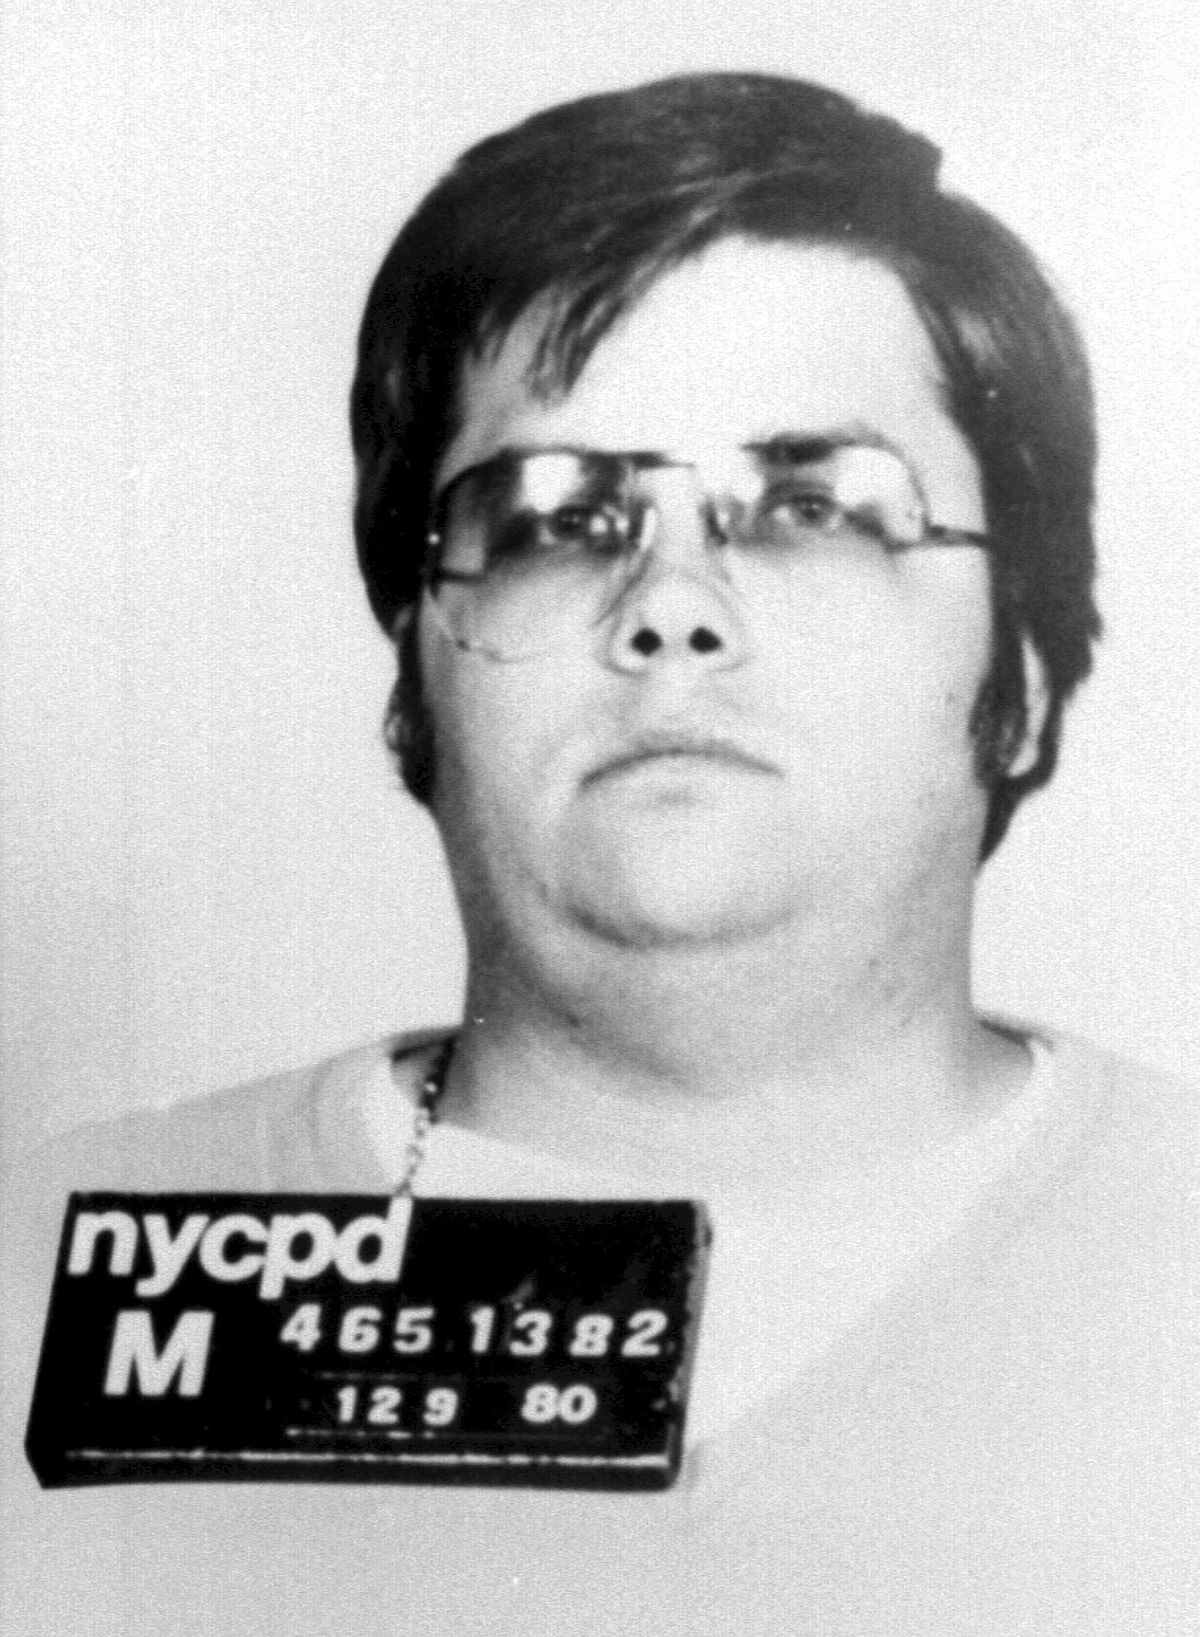 John Lennon gyilkosa, Mark David Chapman a New York-i rendőrség fotóján 